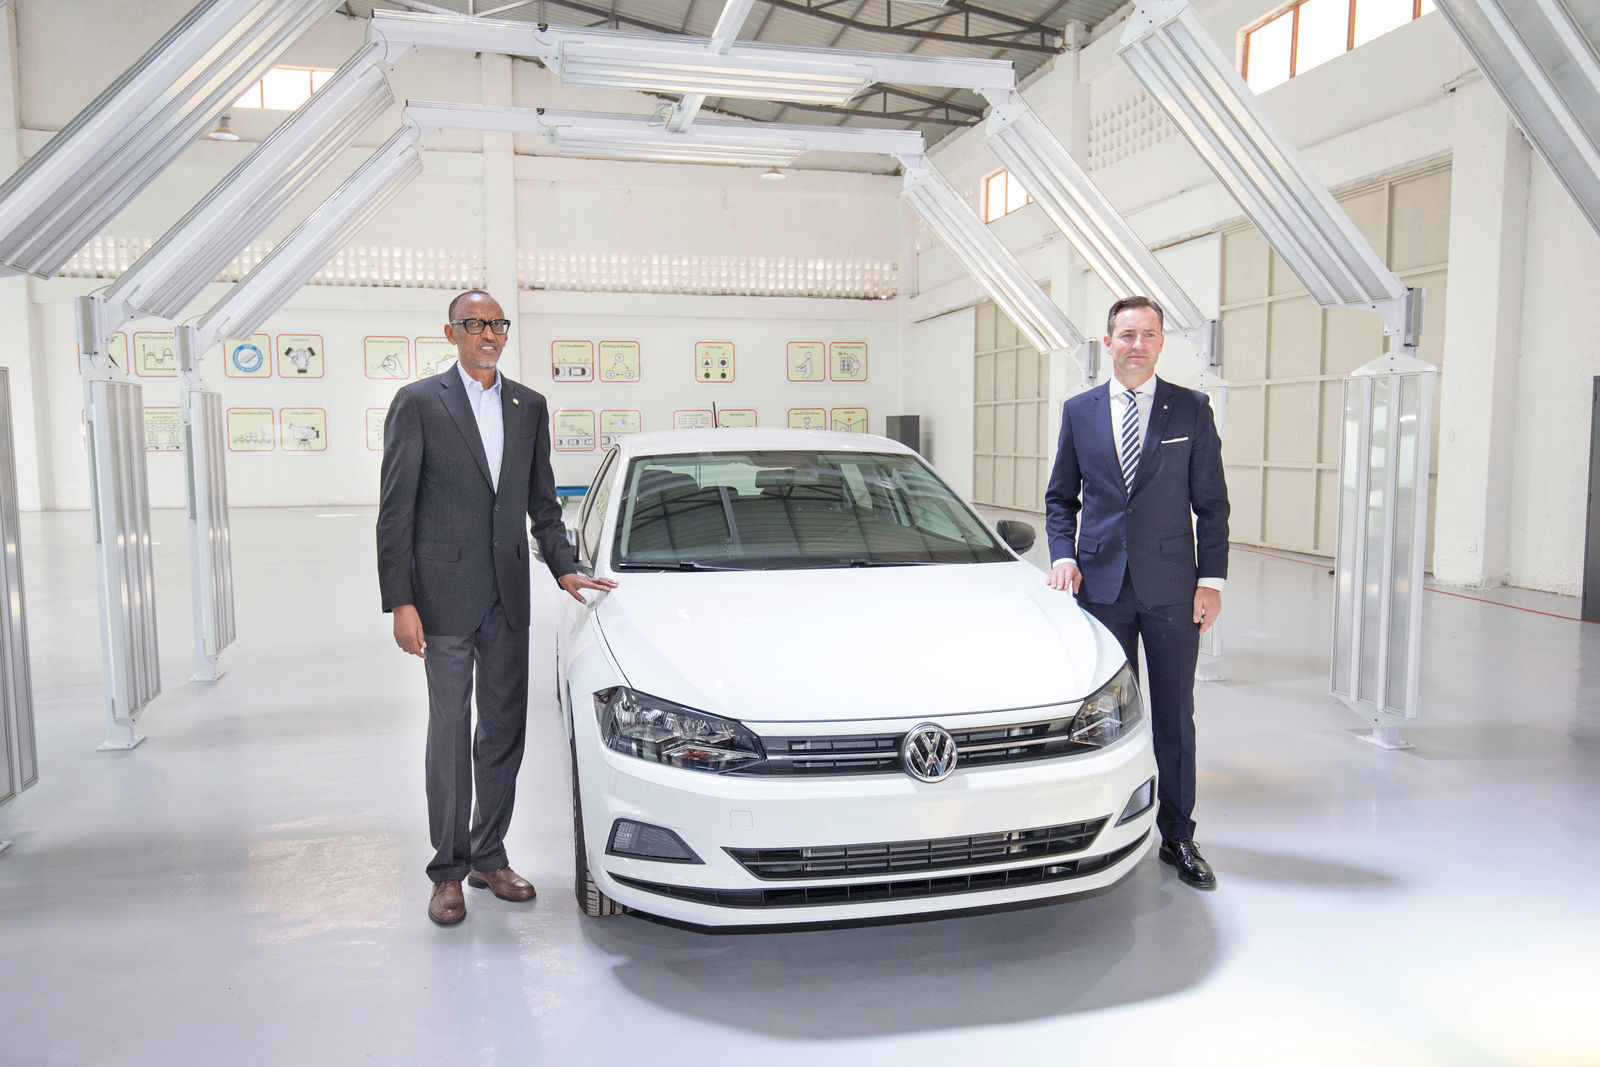 Meilenstein in Afrika: Volkswagen startet lokale Produktion und Car Sharing in Ruanda